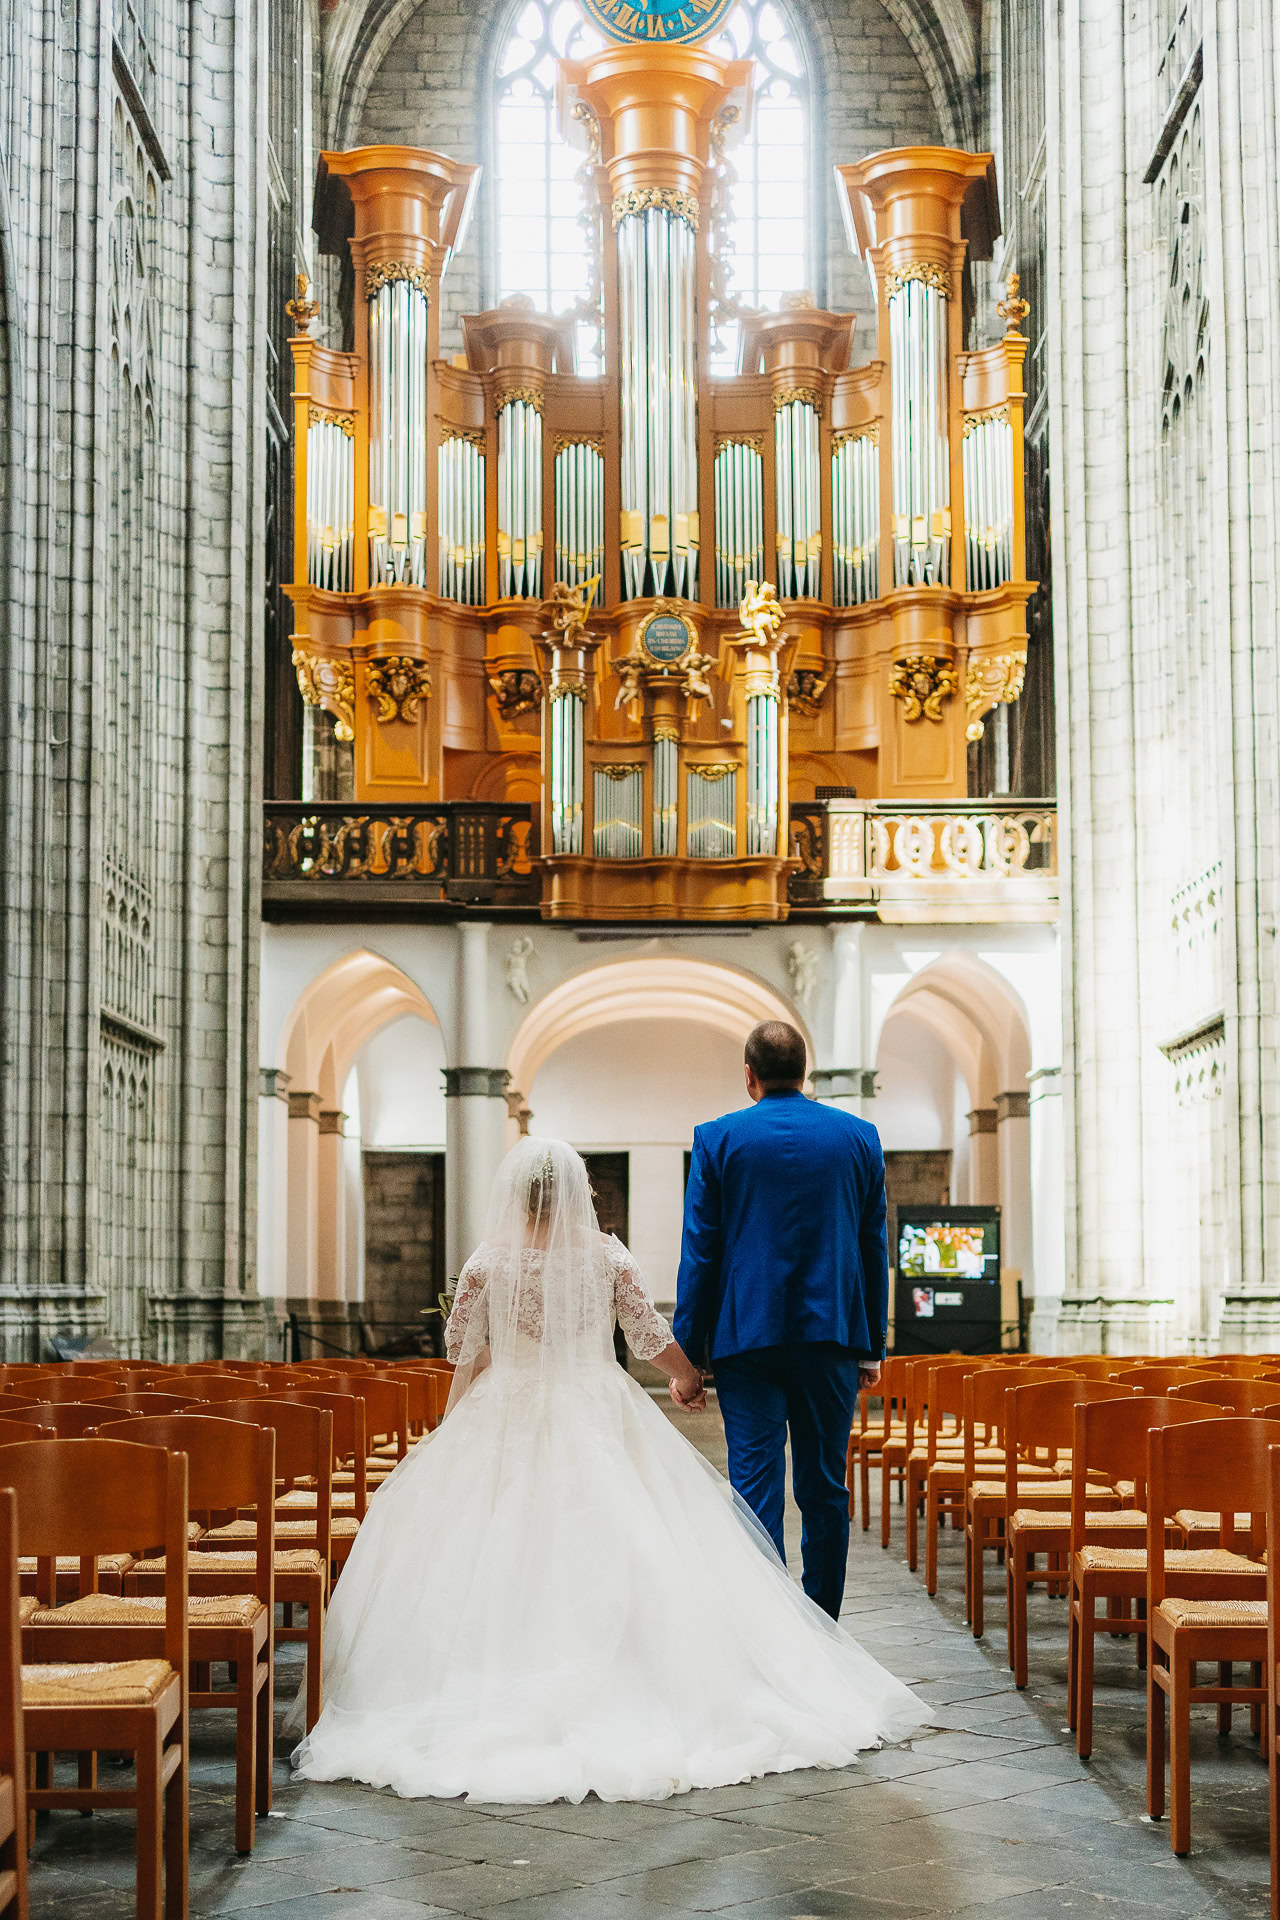 La mariée en robe blanche et le marié en costume bleu marchent main dans la main dans l'allée d'une cathédrale avec un grand orgue en arrière-plan.